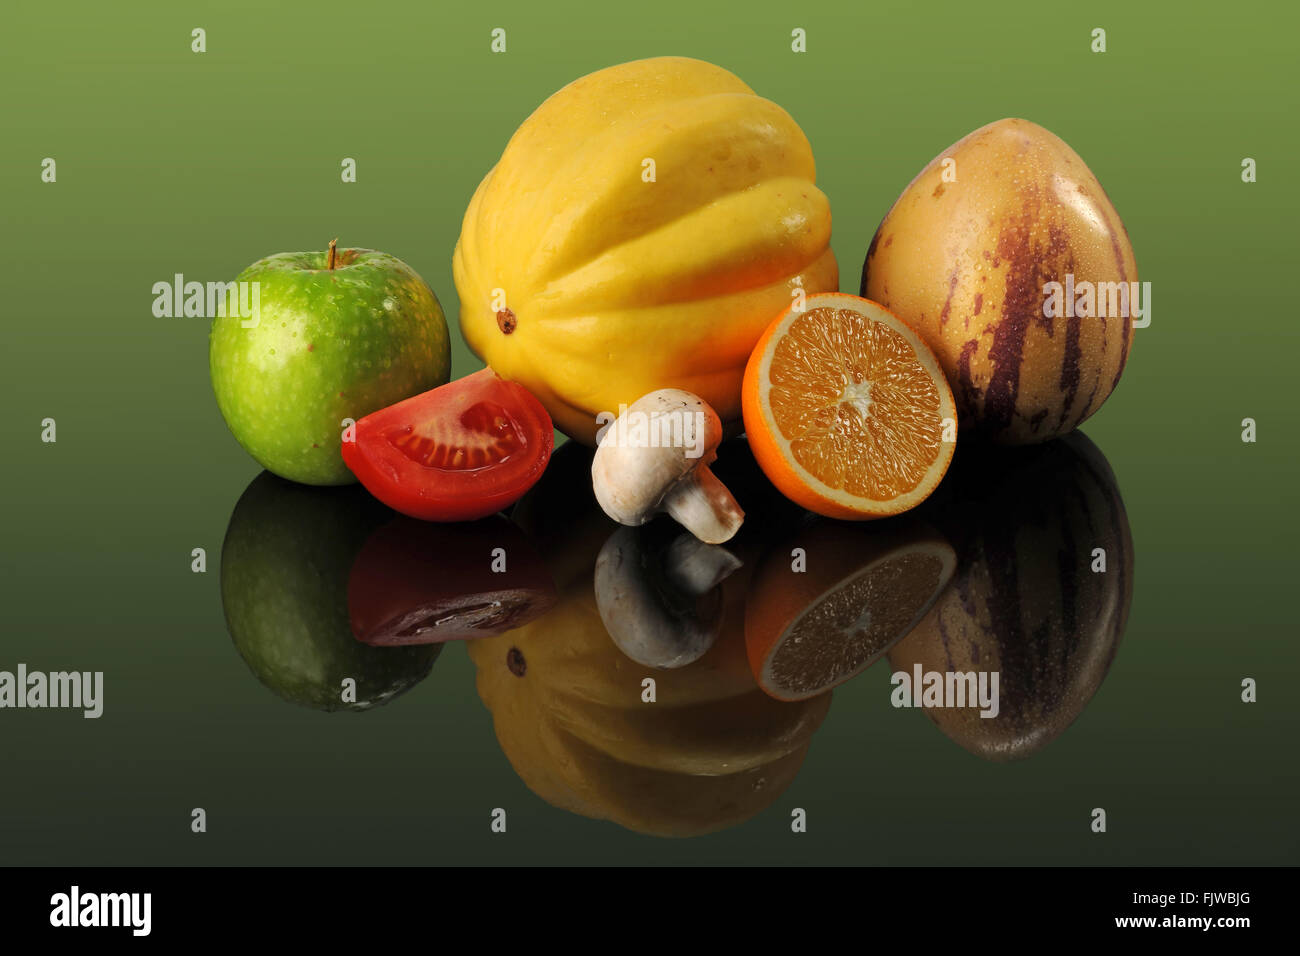 Les fruits et légumes frais sur la table de réflexion sur fond vert Banque D'Images